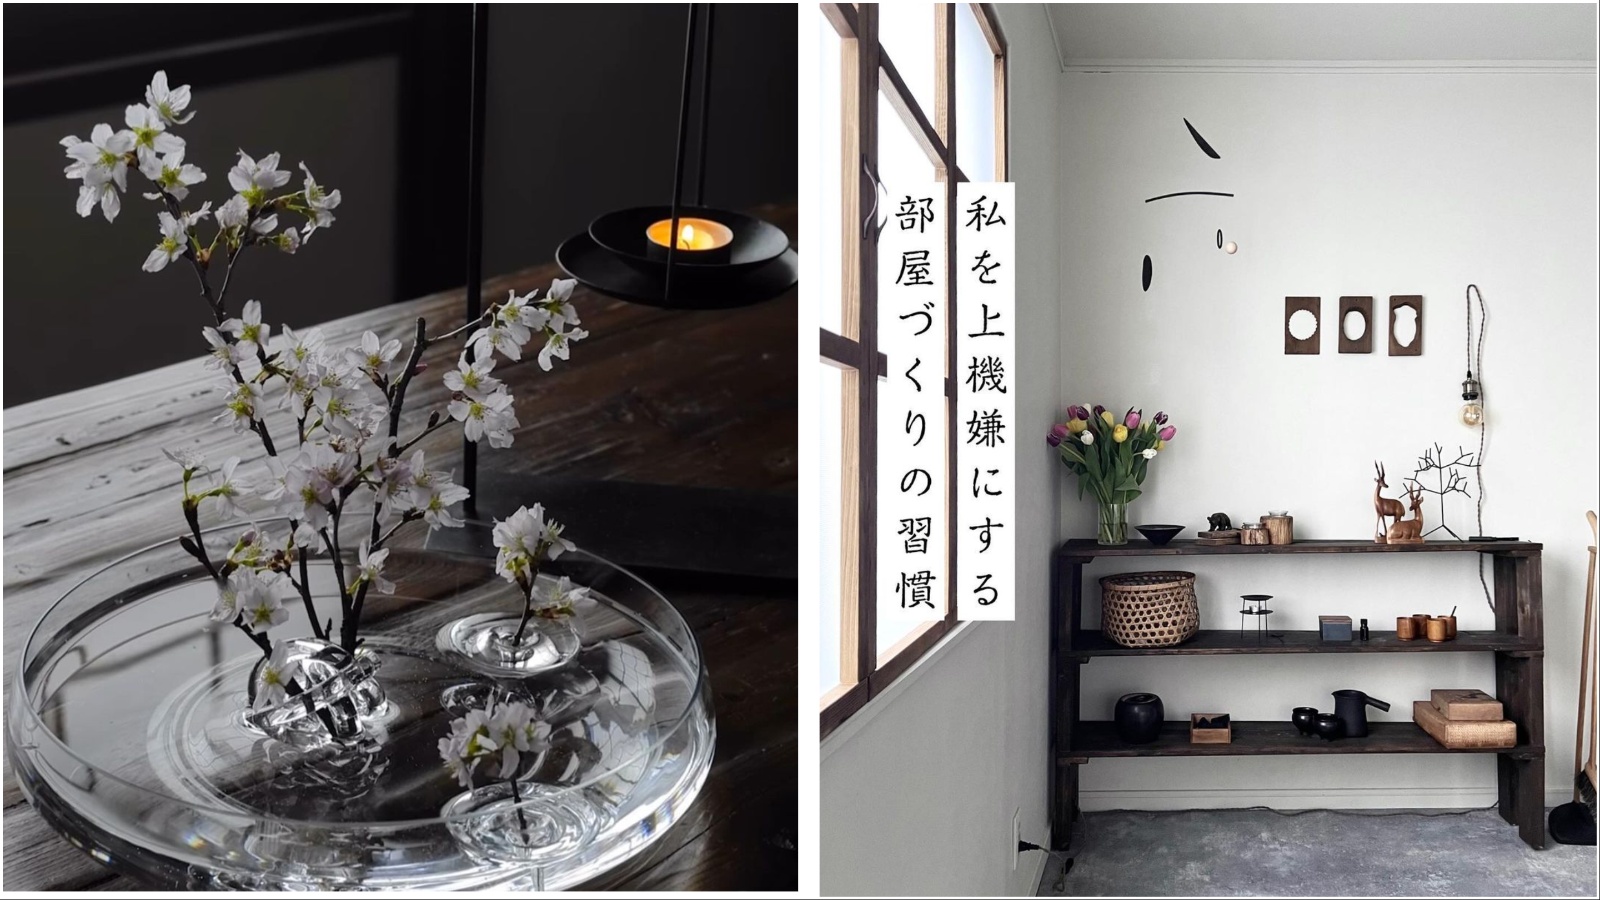 Ove plutajuće japanske vaze obožavat će ljubitelji minimalizma